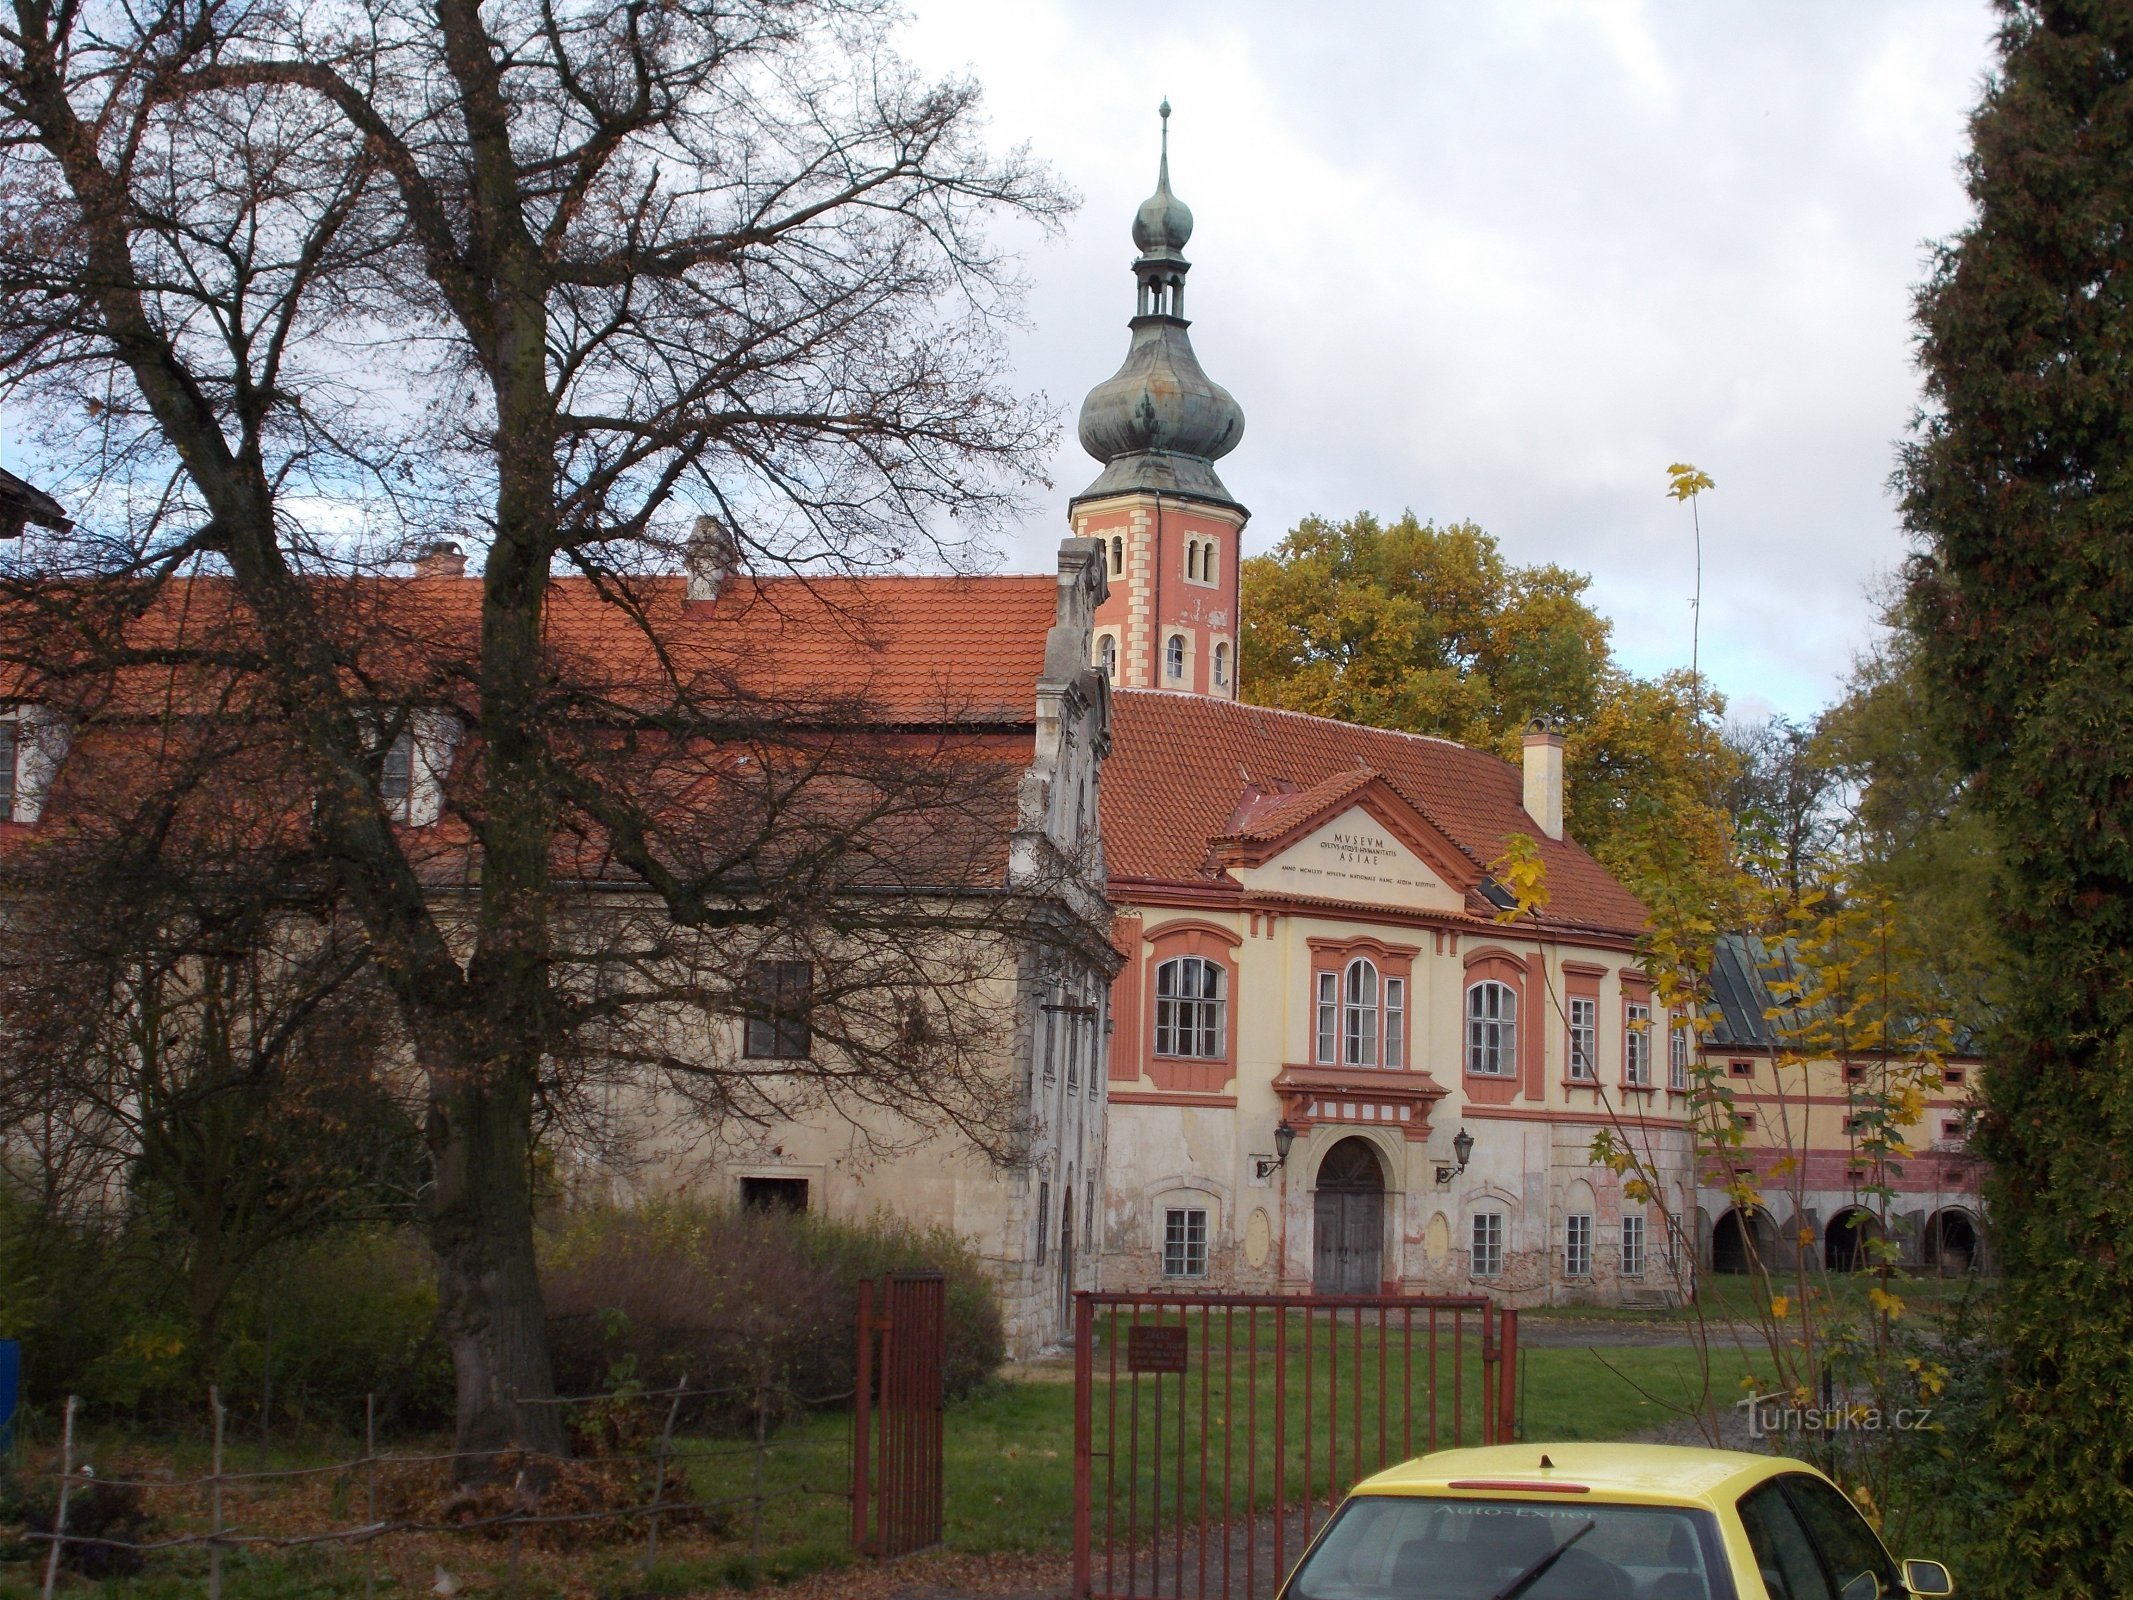 Zamek Liběchov